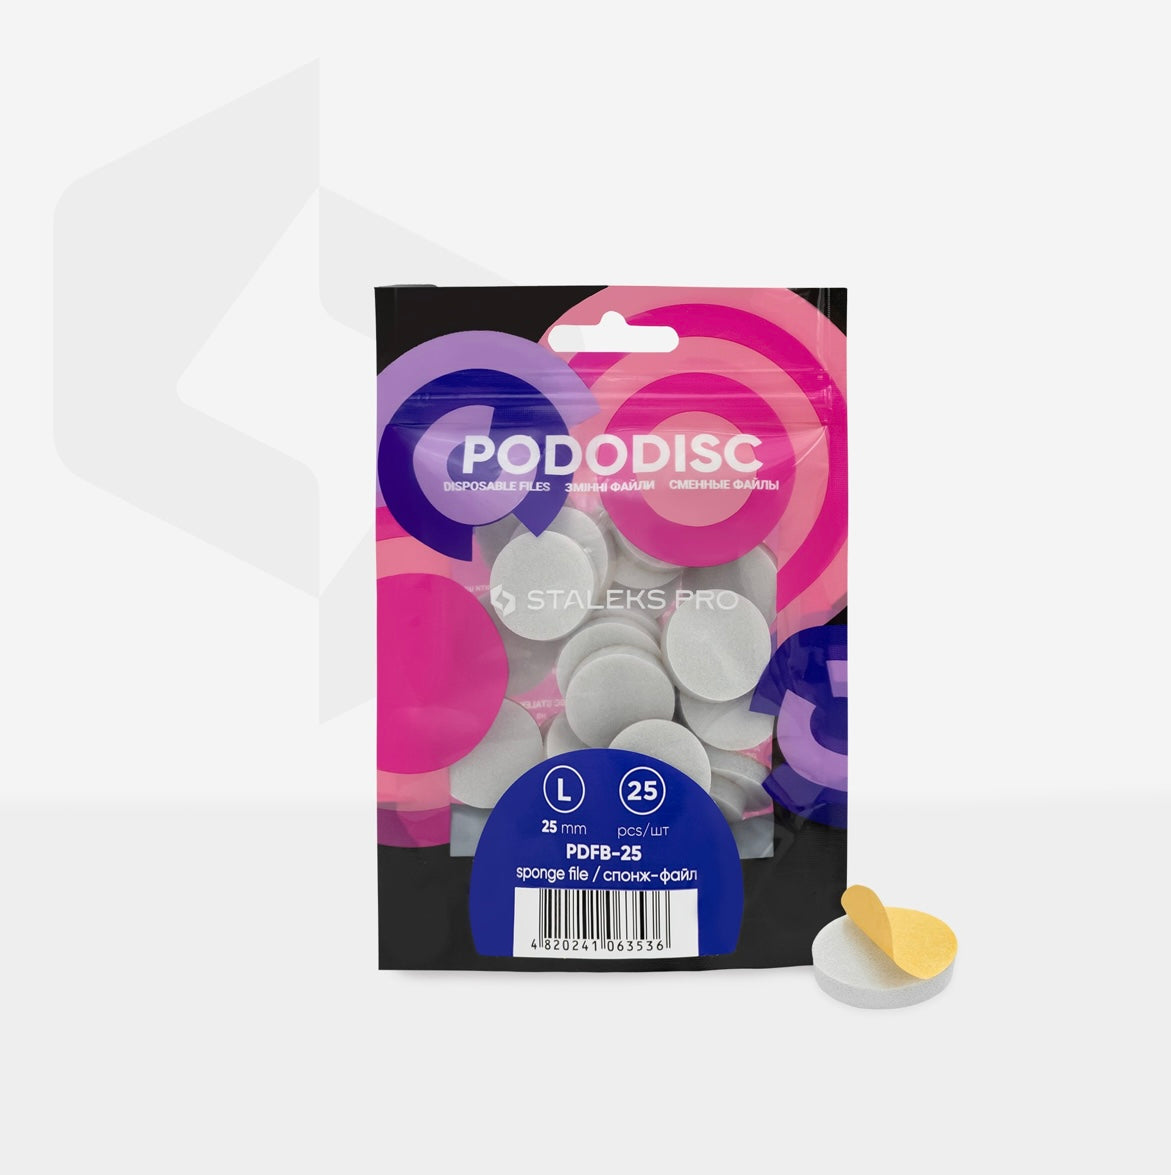 Staleks Pro Pododisc Disposable Disc L 25 mm Files Sponges for Pedicure (25 pcs) PDFB-25